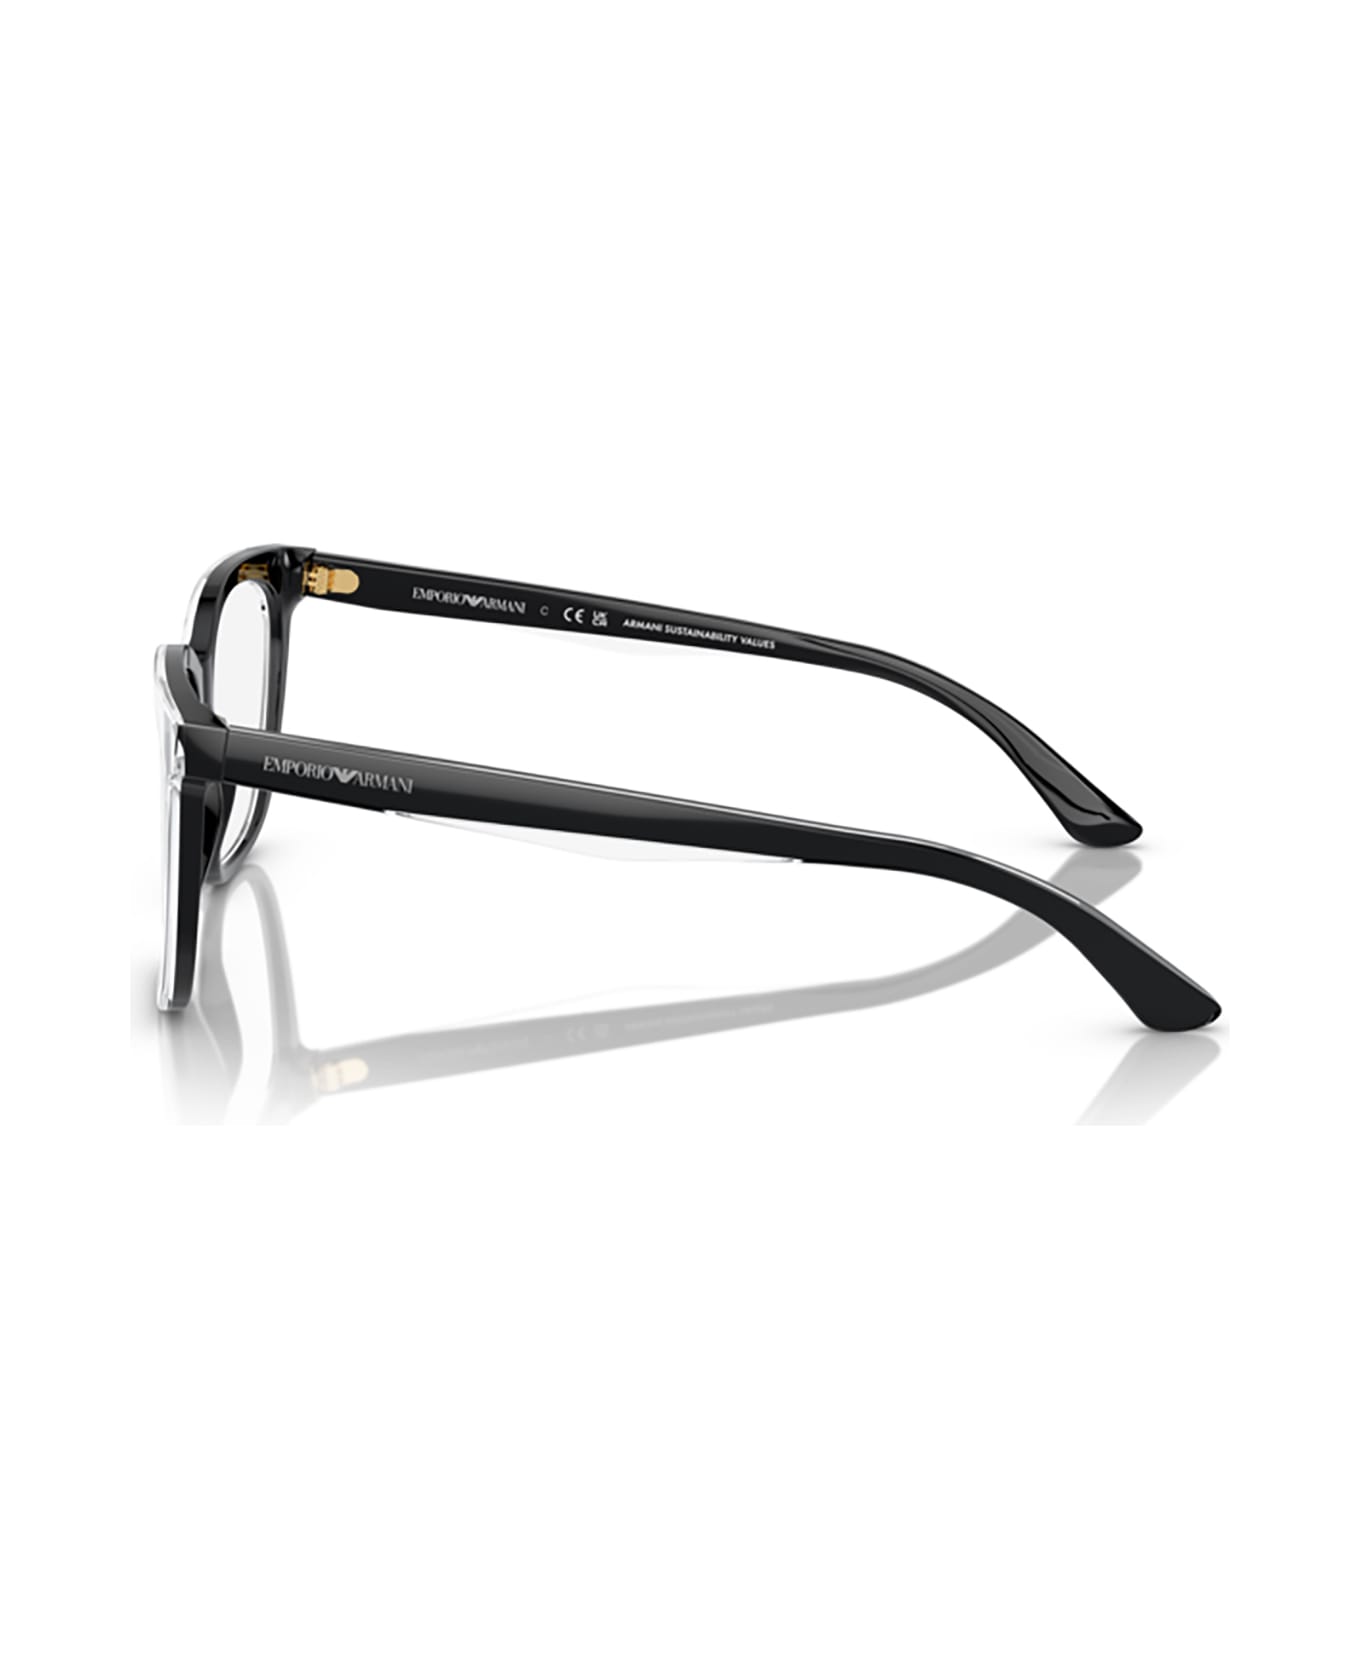 Emporio Armani Ea3228 Shiny Black / Top Crystal Glasses - Shiny Black / Top Crystal